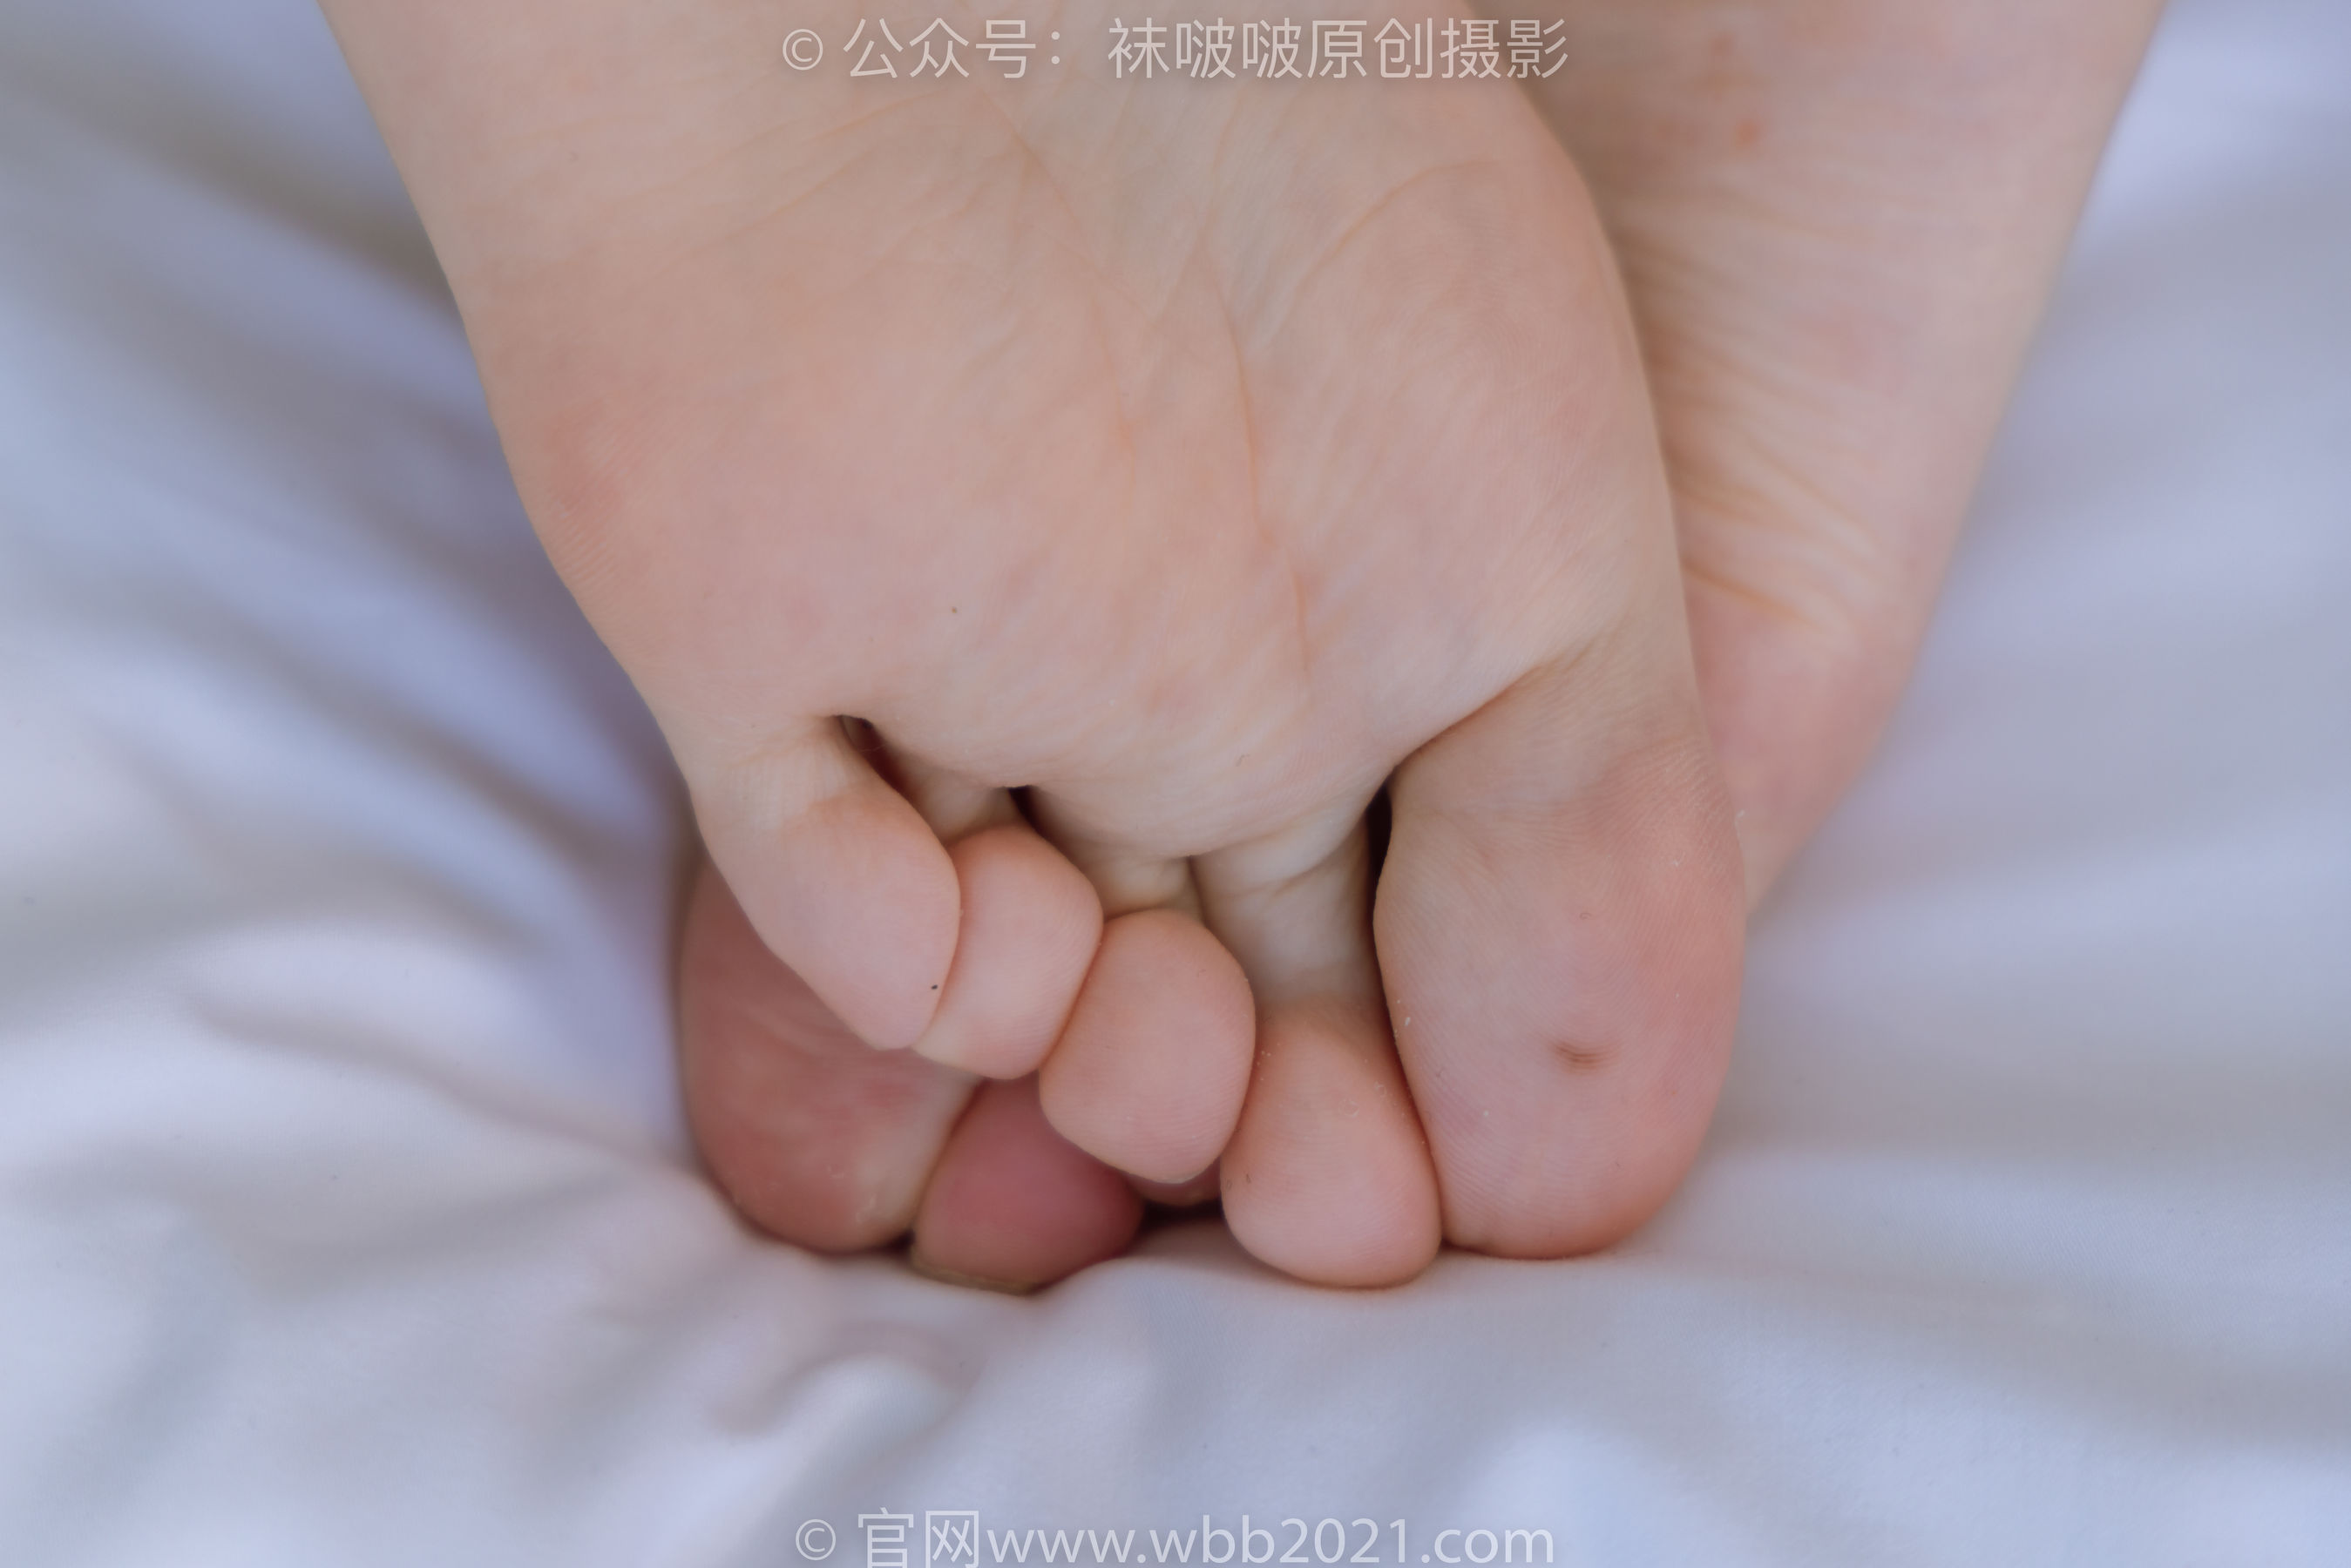 BoBoSocks袜啵啵 No.251 小甜豆 -高跟鞋、超薄黑丝、裸足/(139P)